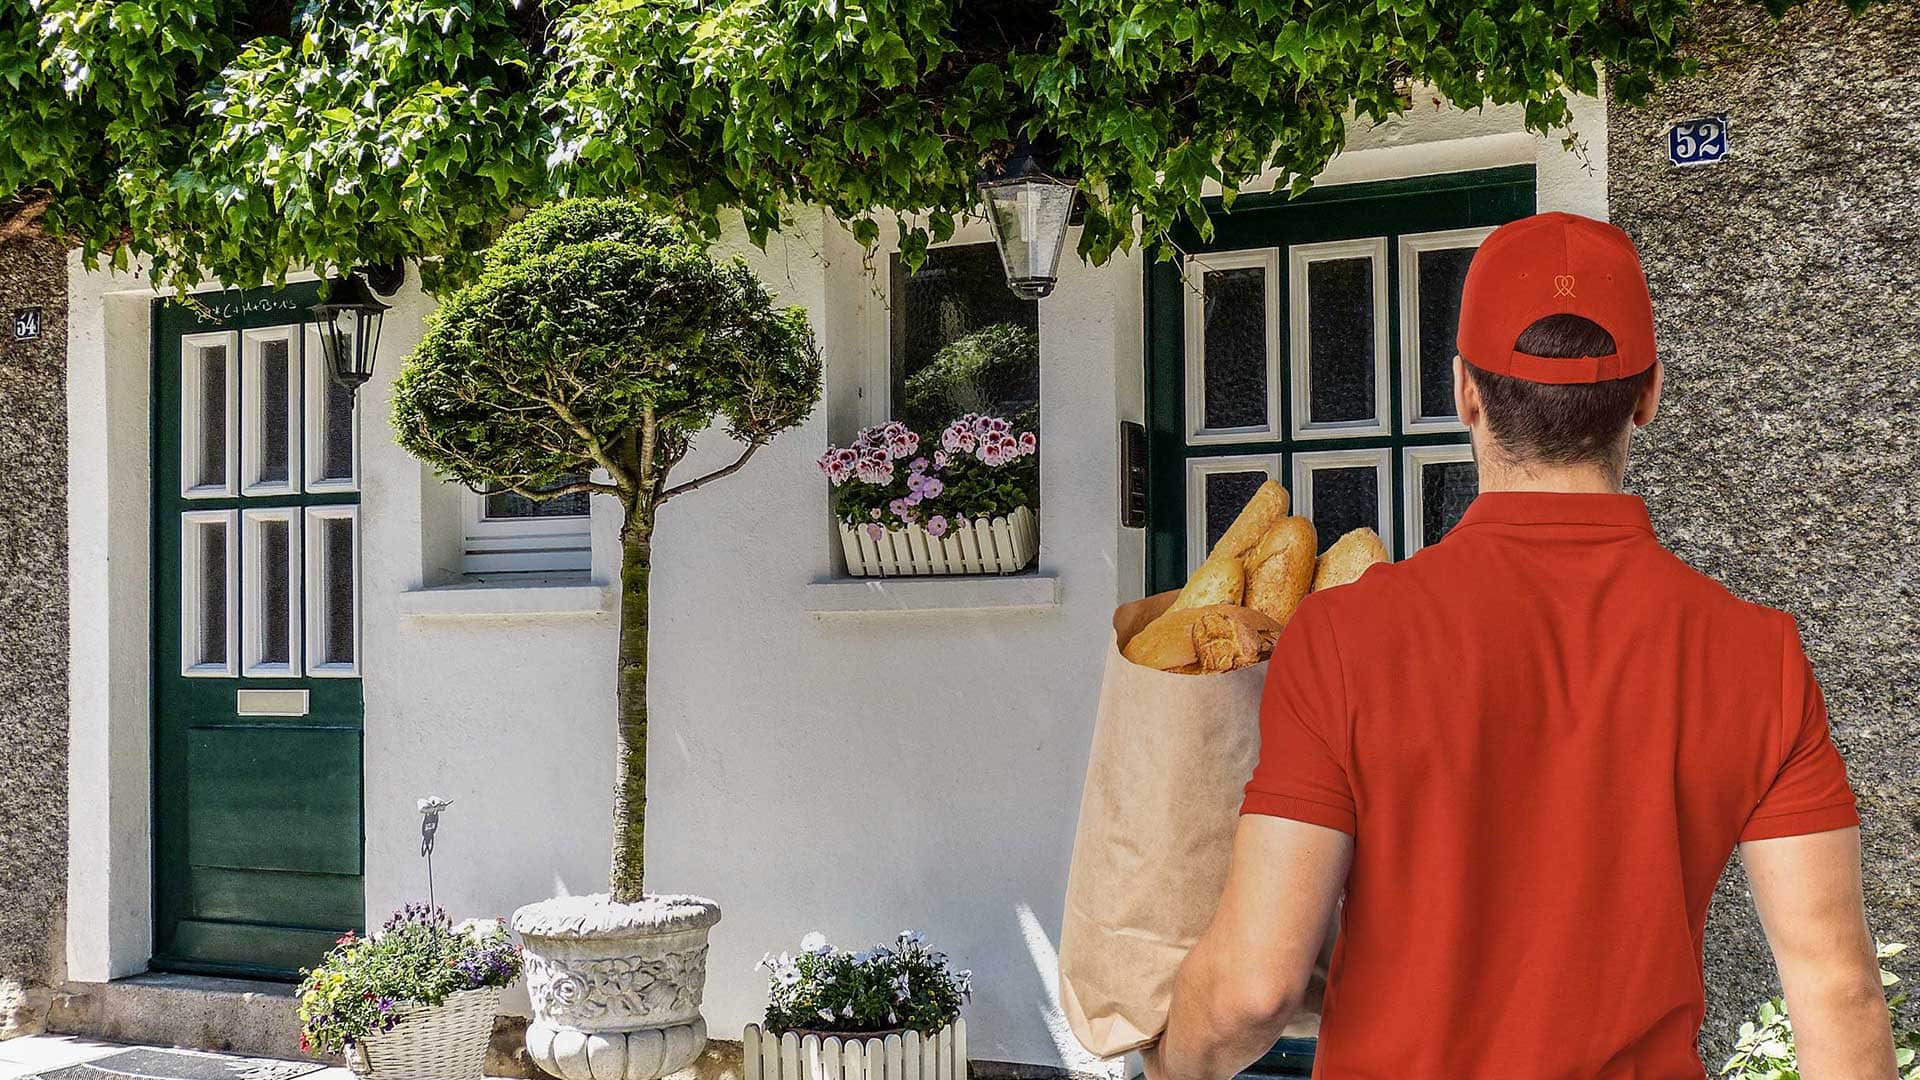 Lieferant (von hinten zu sehen) steht mit Brottüte vor einer Haustür.